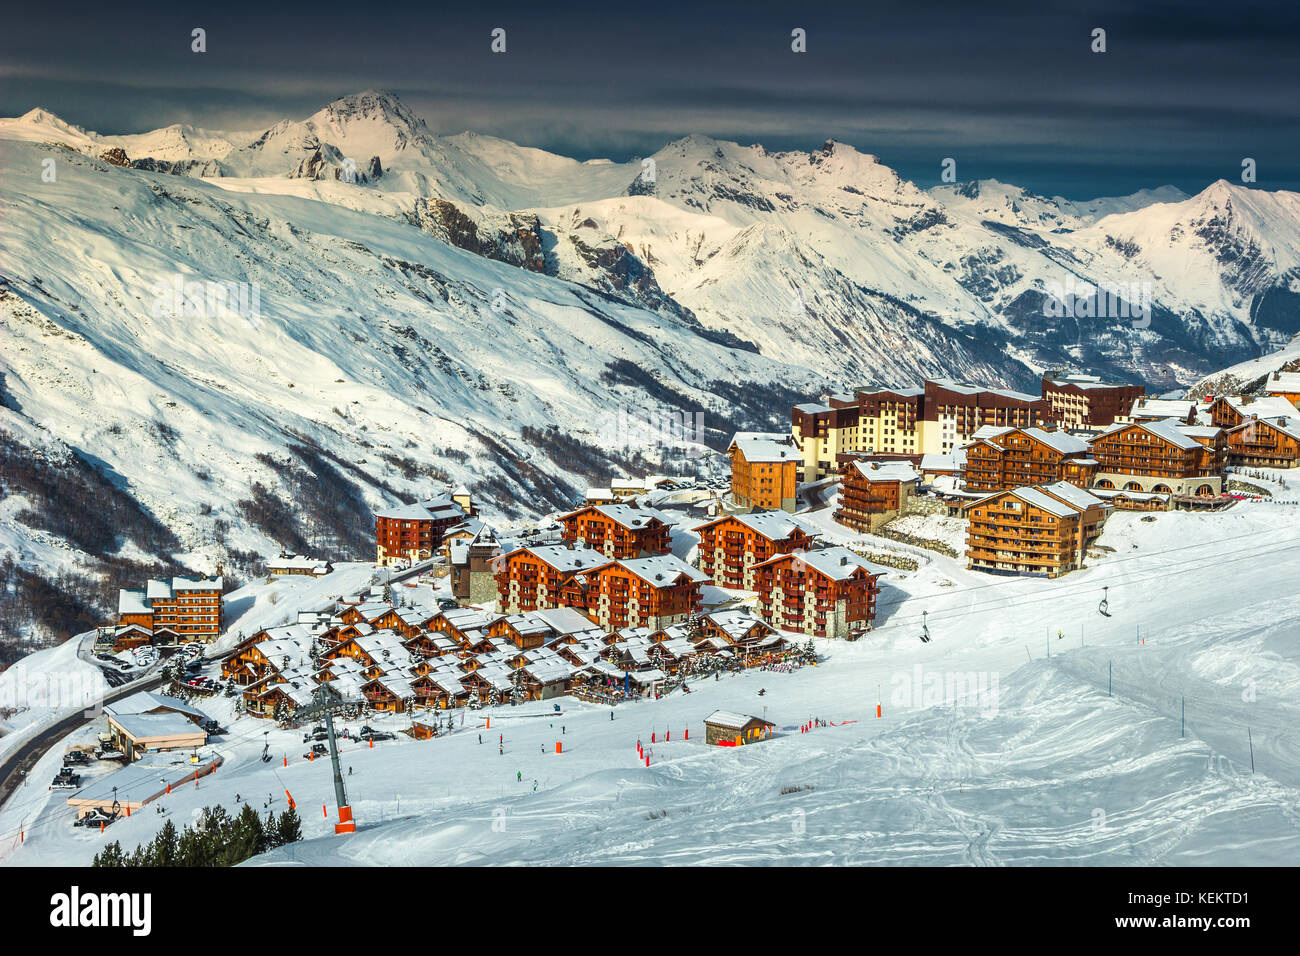 Incredibile paesaggio invernale e ski resort con alpine tipiche case in legno nelle Alpi francesi, les menuires, 3 vallees, Francia, Europa Foto Stock